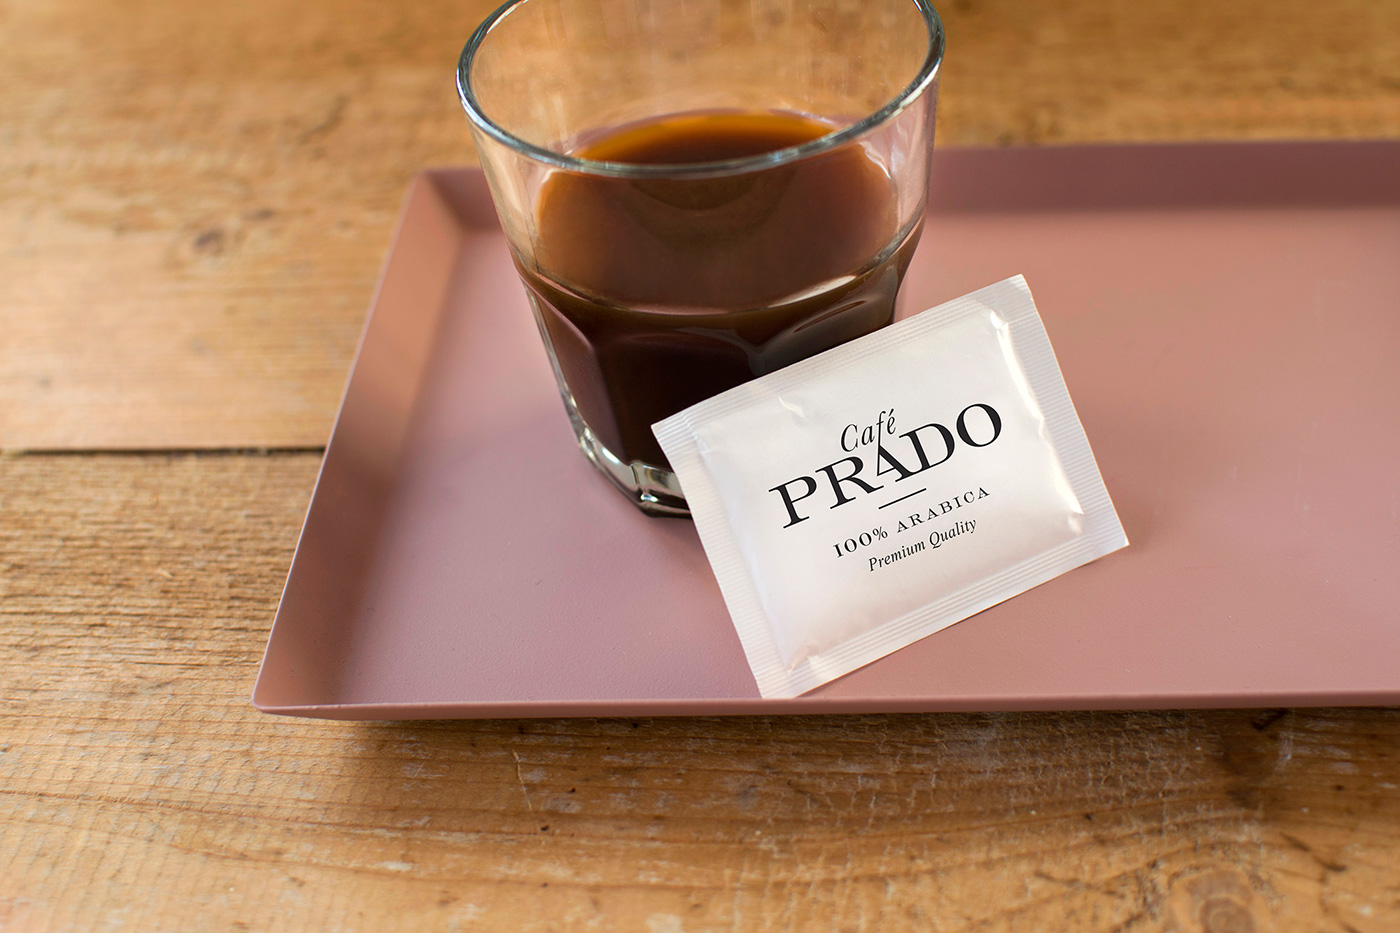 Coffee Packaging Design - Café Prado 09